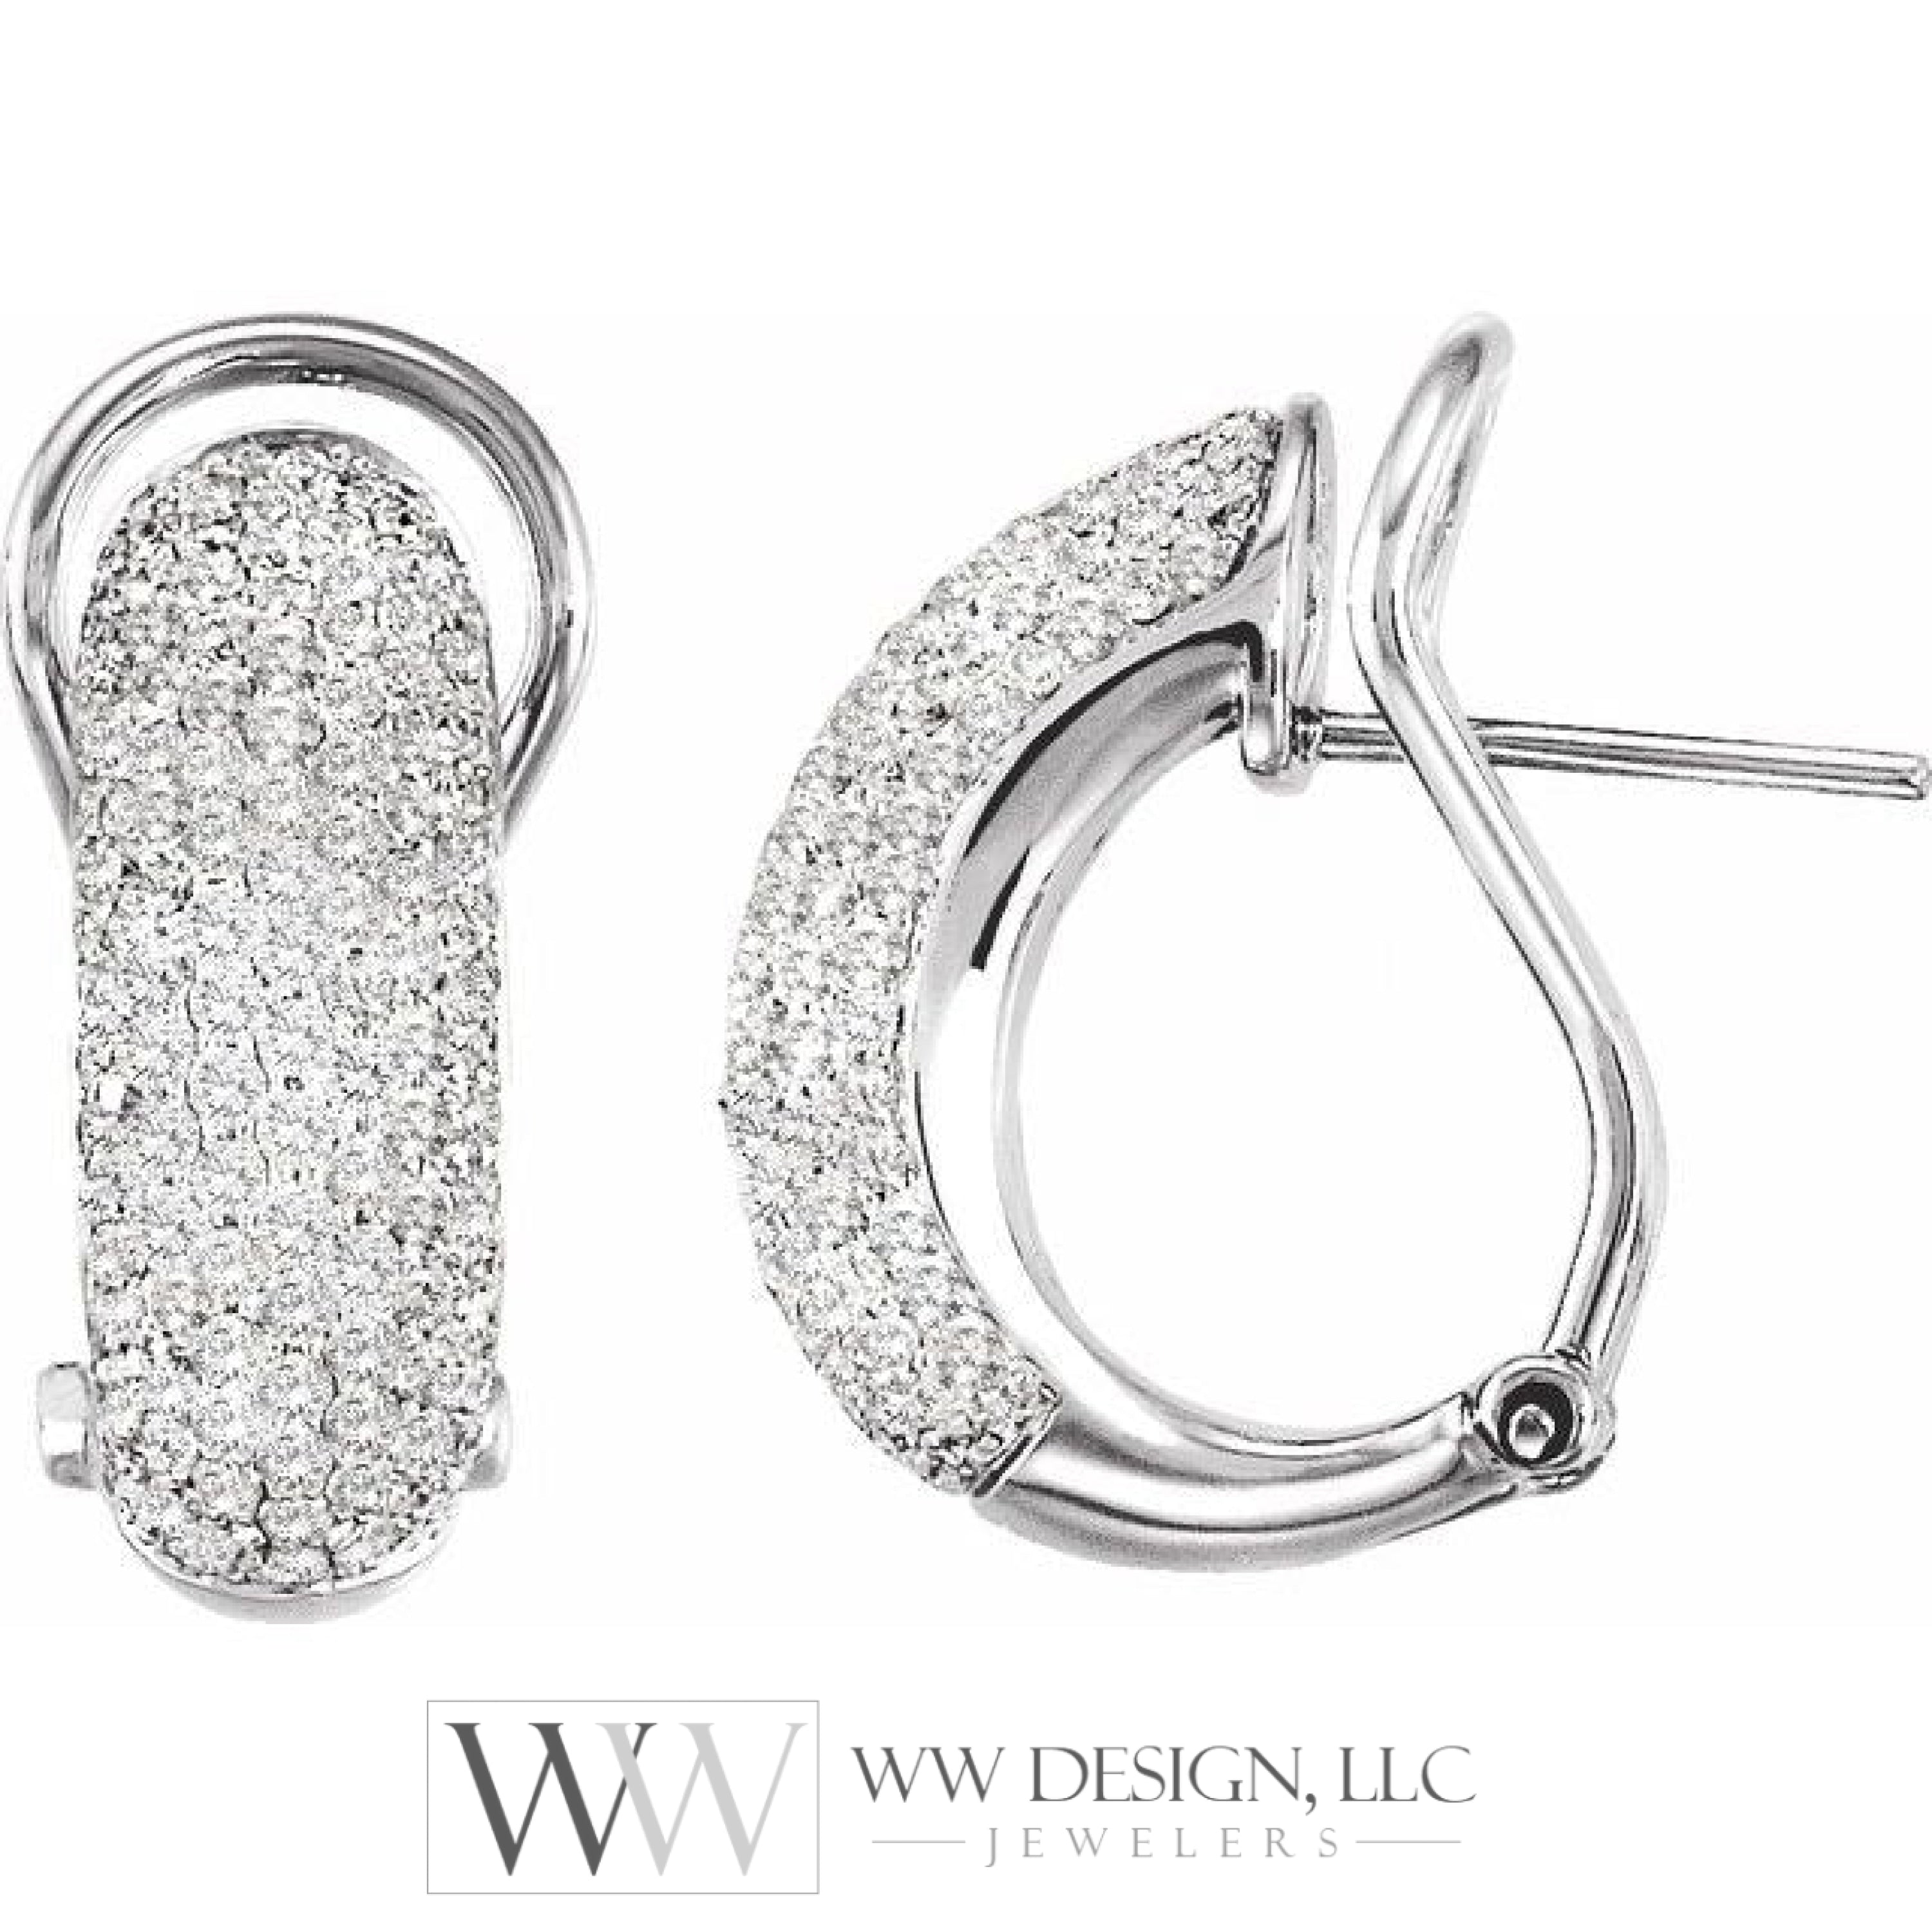 1.5 Ctw Natural Diamond Earrings - 14K White Gold